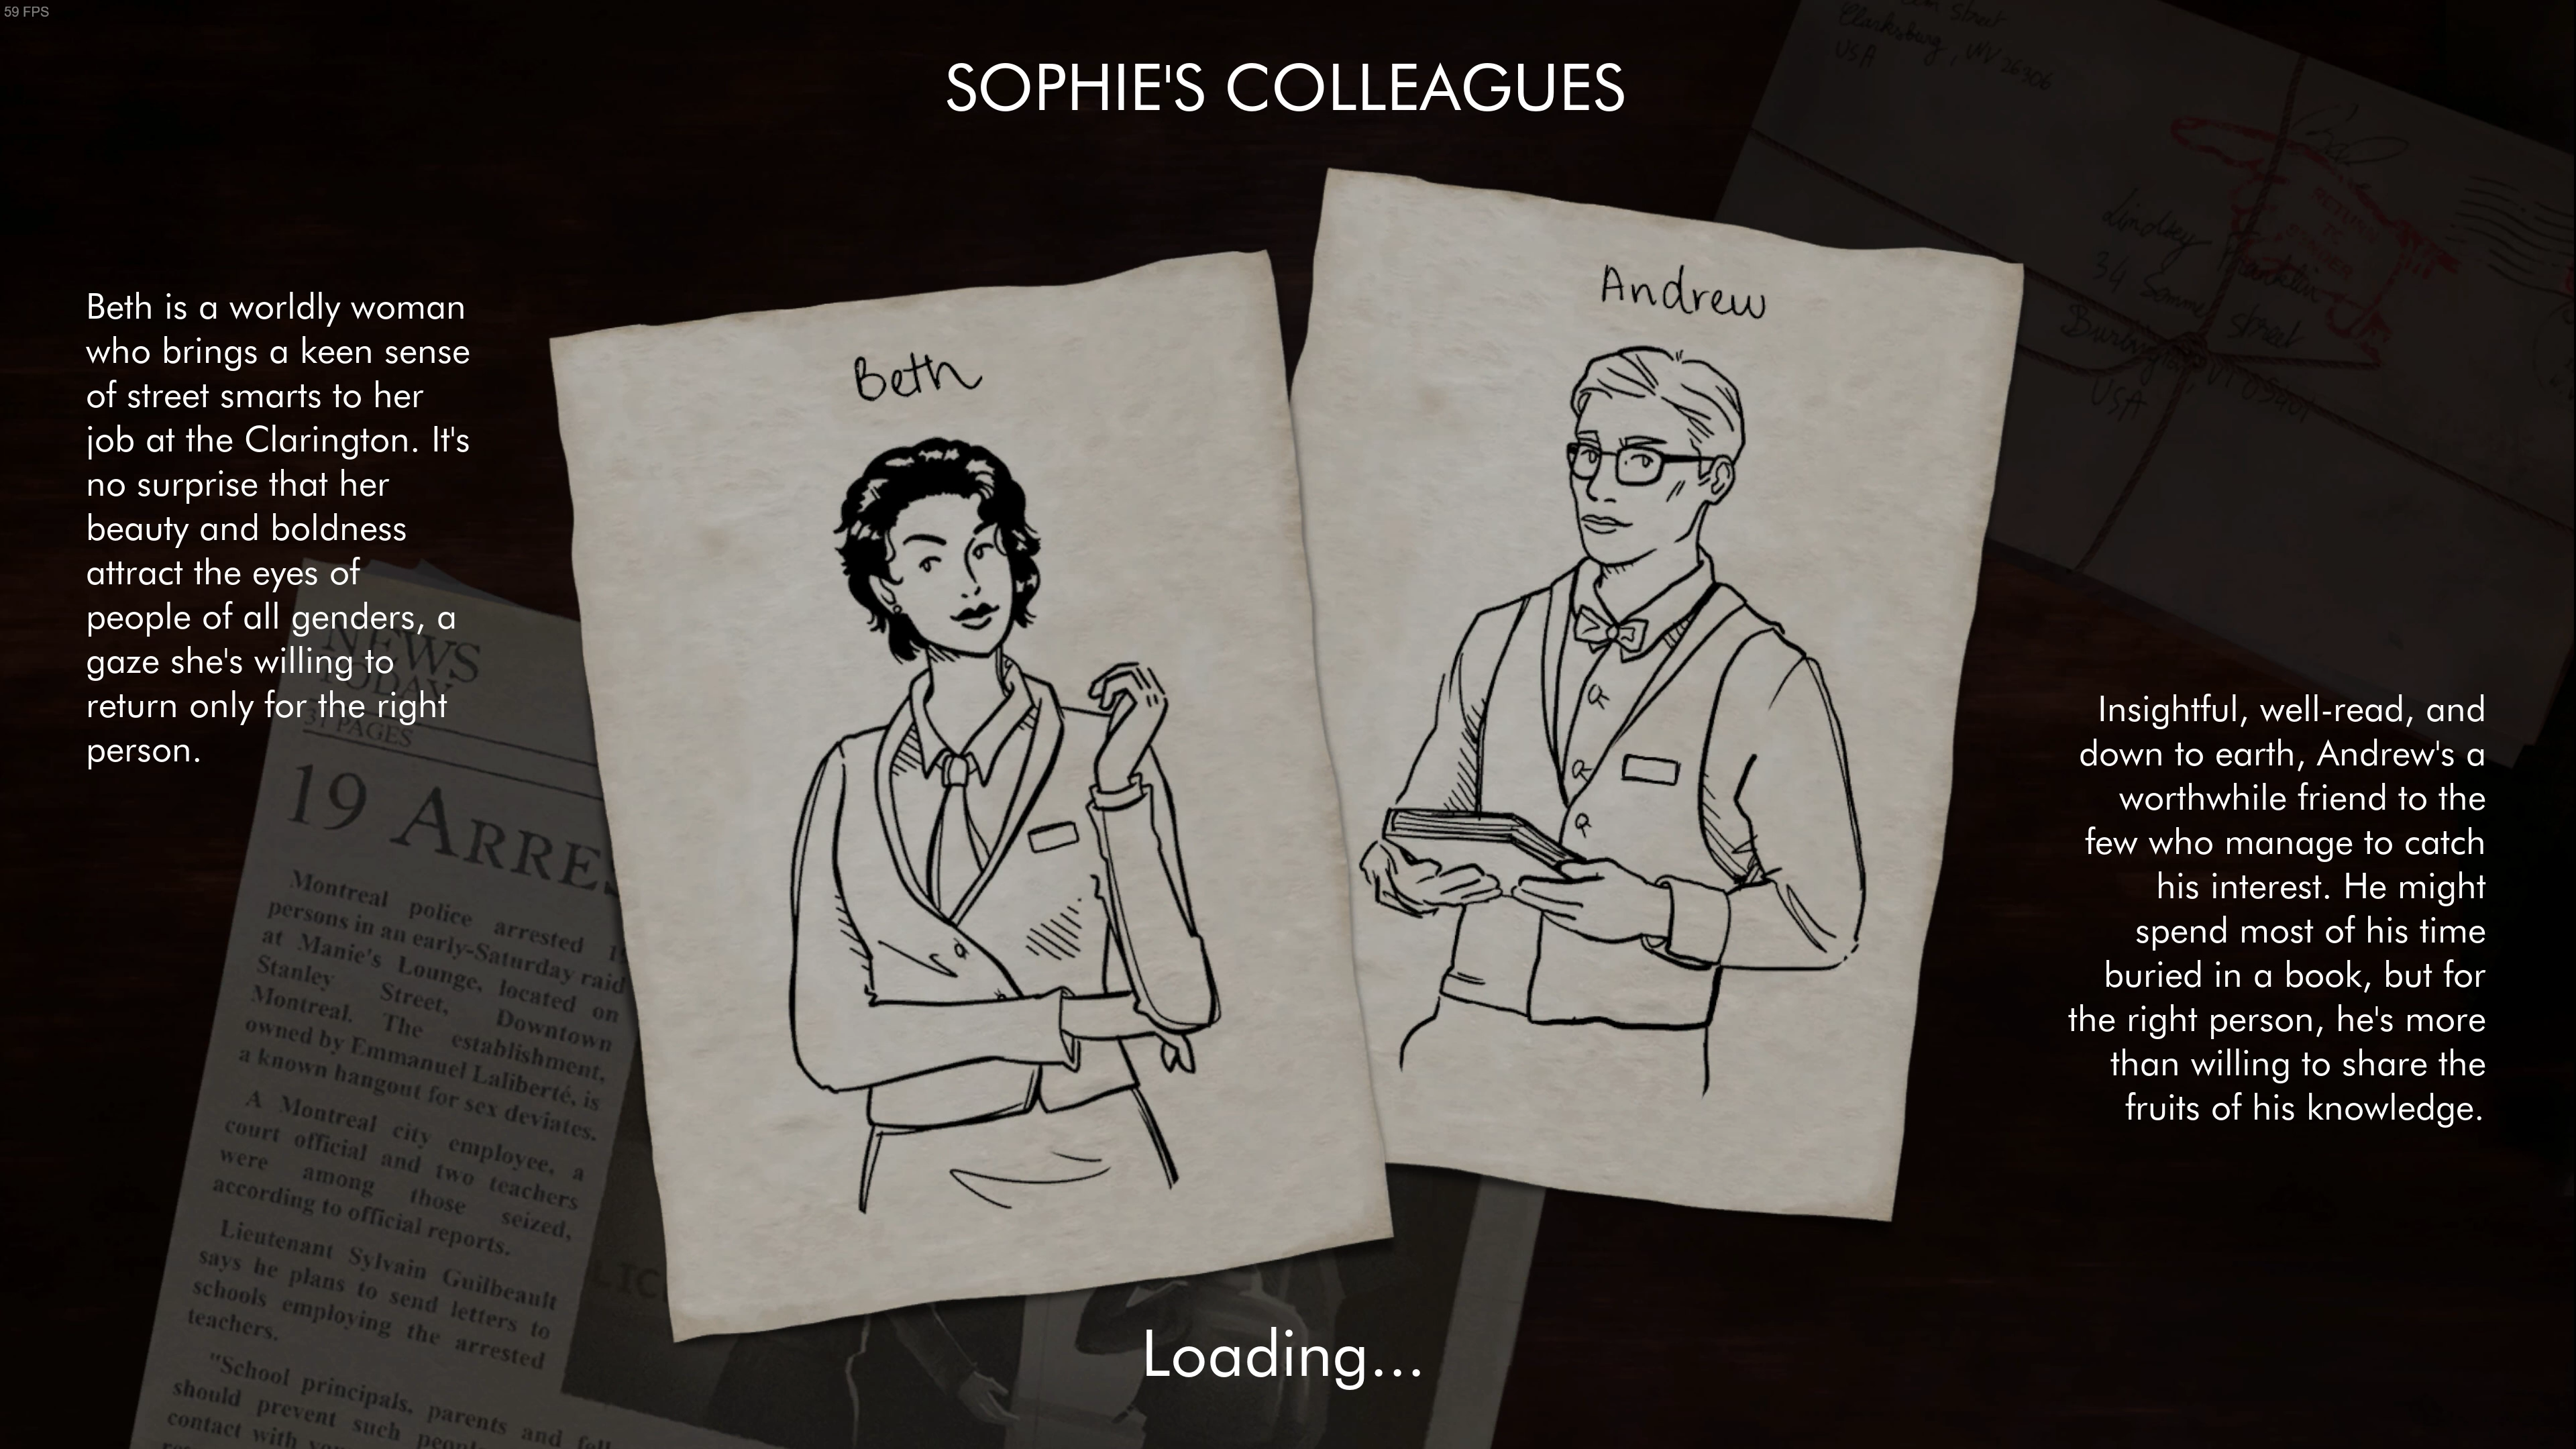 遊戲對各個配角有一定程度的描寫，在demo中蘇菲可以選擇打電話向男同事\女同事求助